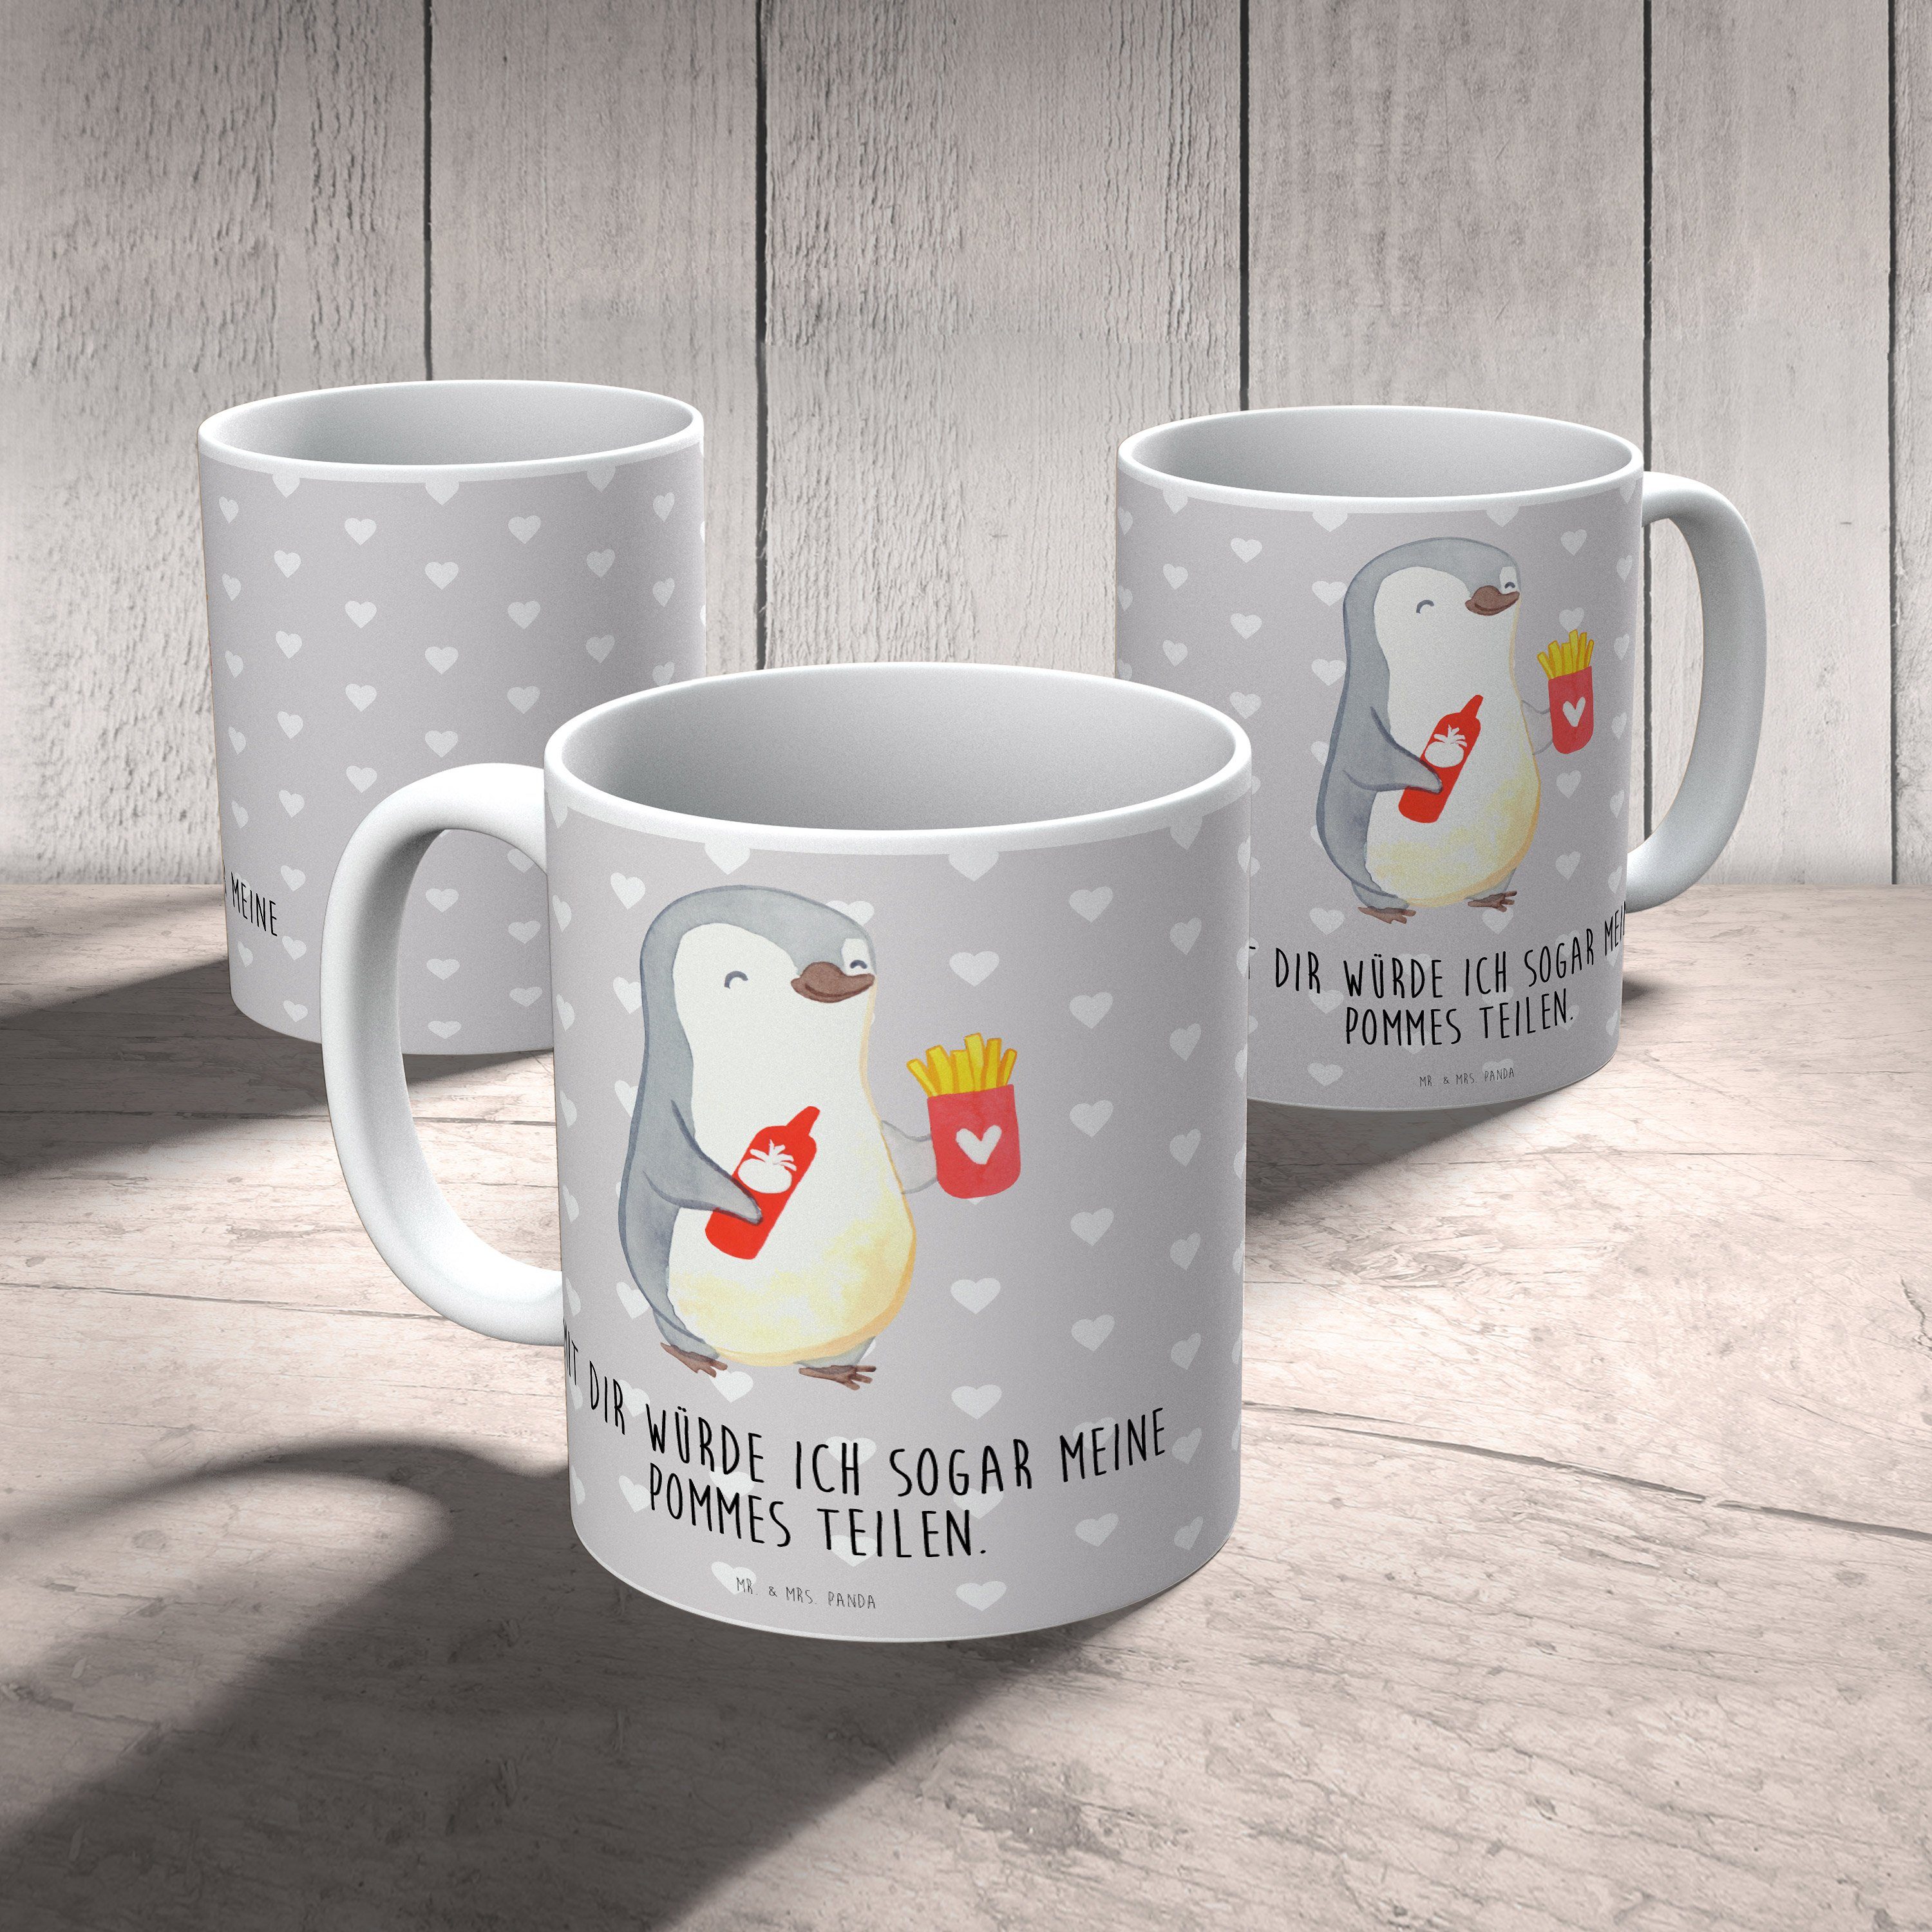 Mrs. Pommes Liebe, & Panda Mr. - Tasse Tasse, - Pinguin Grau Keramik Pastell Hochzeitstag, Geschenk,